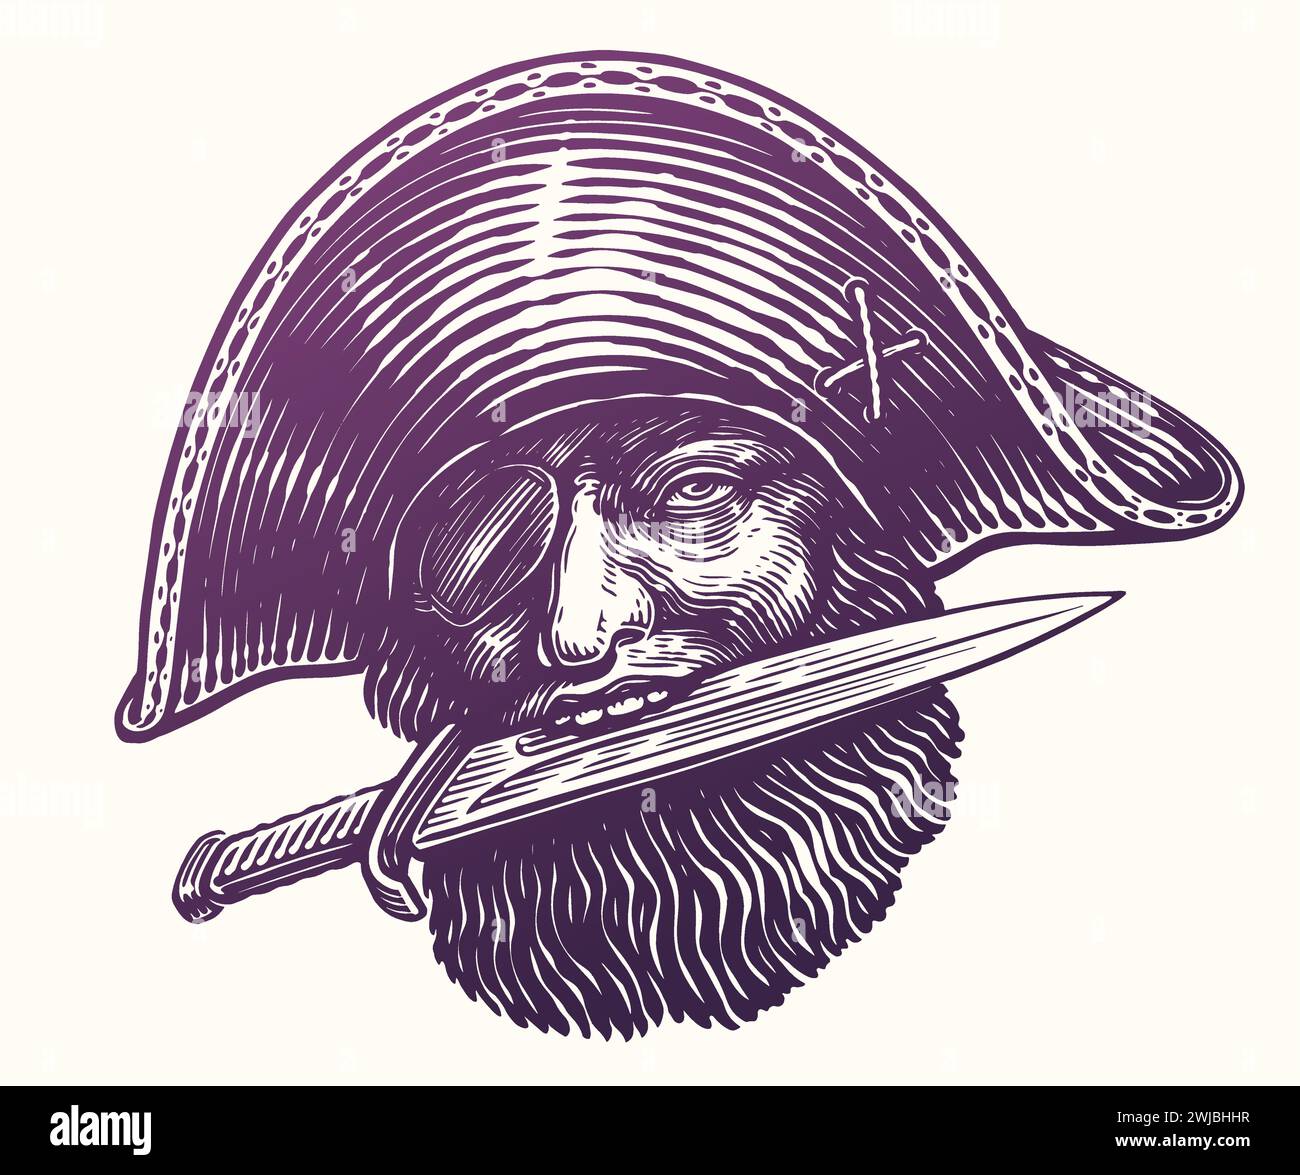 Pirata con daga en los dientes. Capitán de mar de cadera en sombrero con cuchillo. Dibujado a mano boceto vintage ilustración vectorial Ilustración del Vector